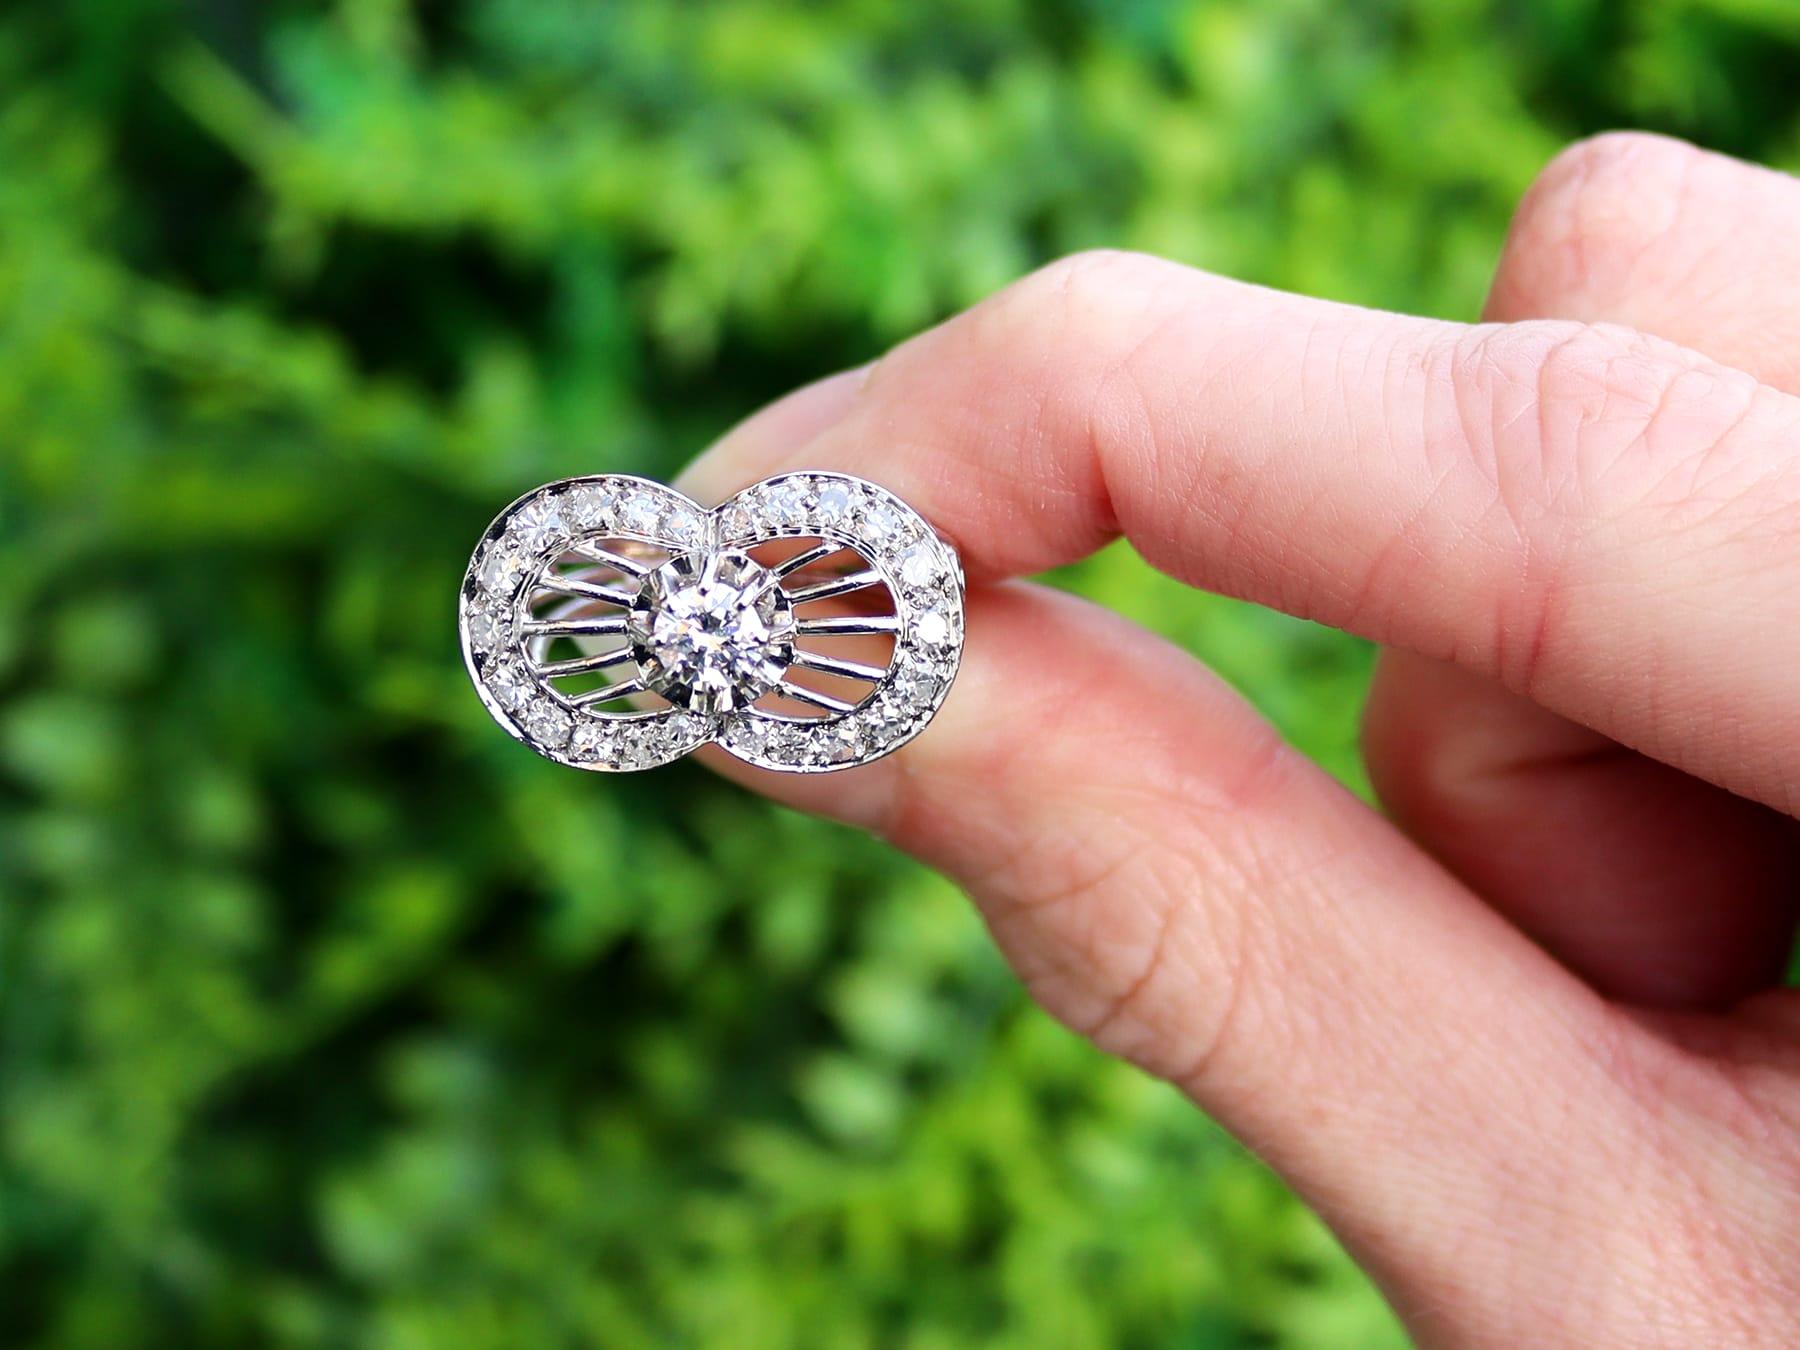 Ein atemberaubender, feiner und beeindruckender französischer 1,06 Karat Diamant und Platin geometrischer Kleiderring; Teil unserer Vintage Jewelry und Estate Jewelry-Kollektionen.

Dieser atemberaubende Diamantring im Vintage-Stil ist aus Platin